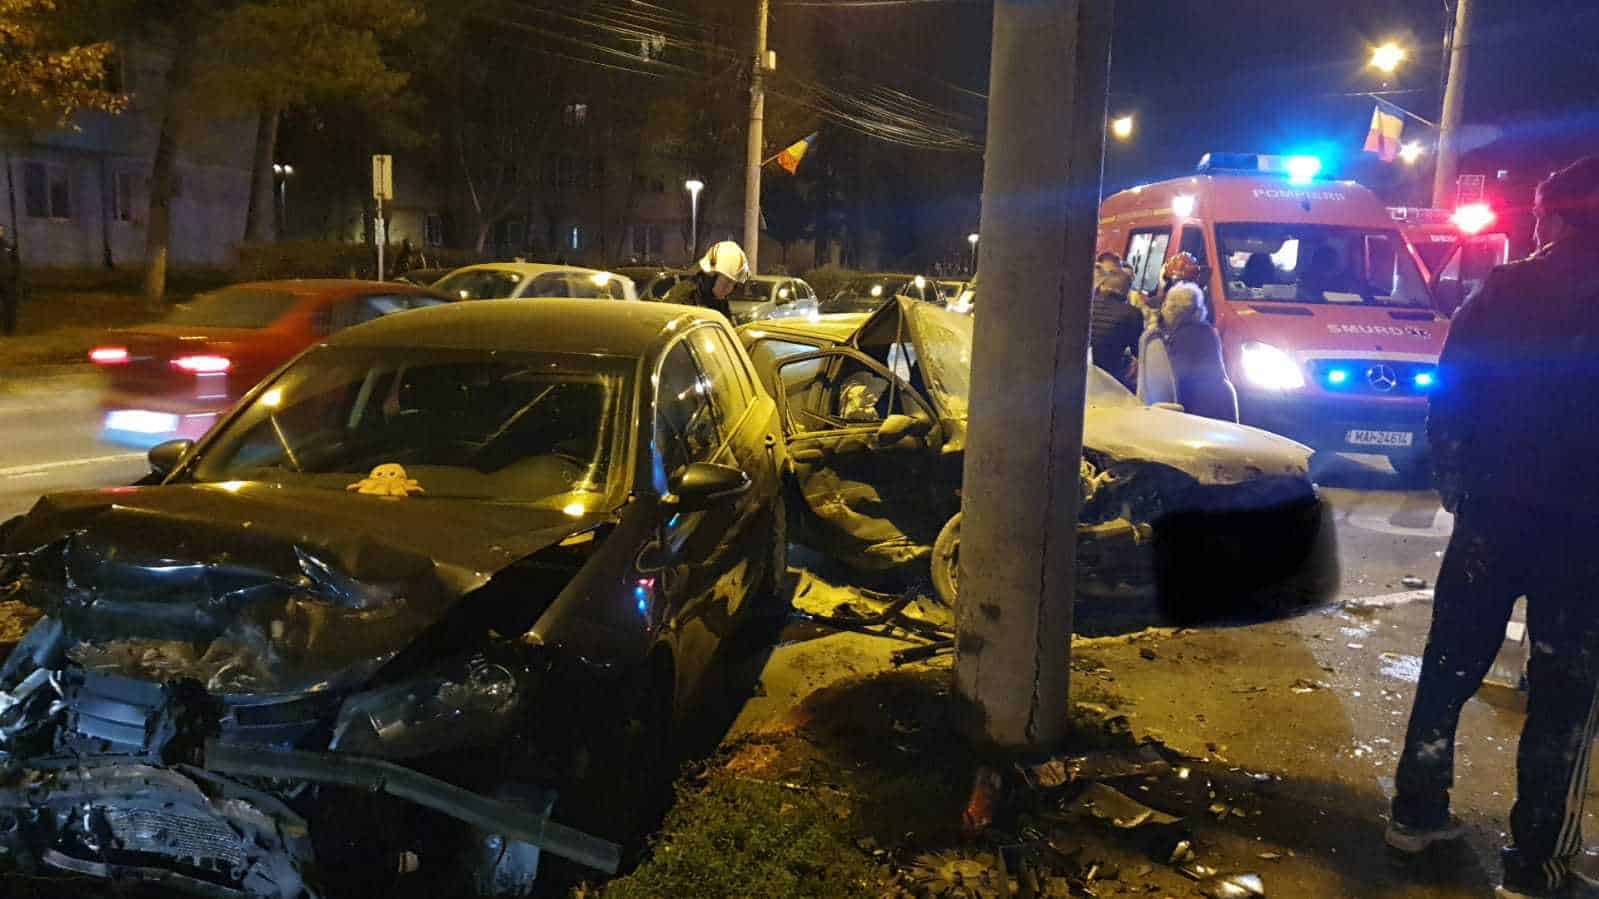 video foto: accident pe strada rahovei - impact violent între două mașini